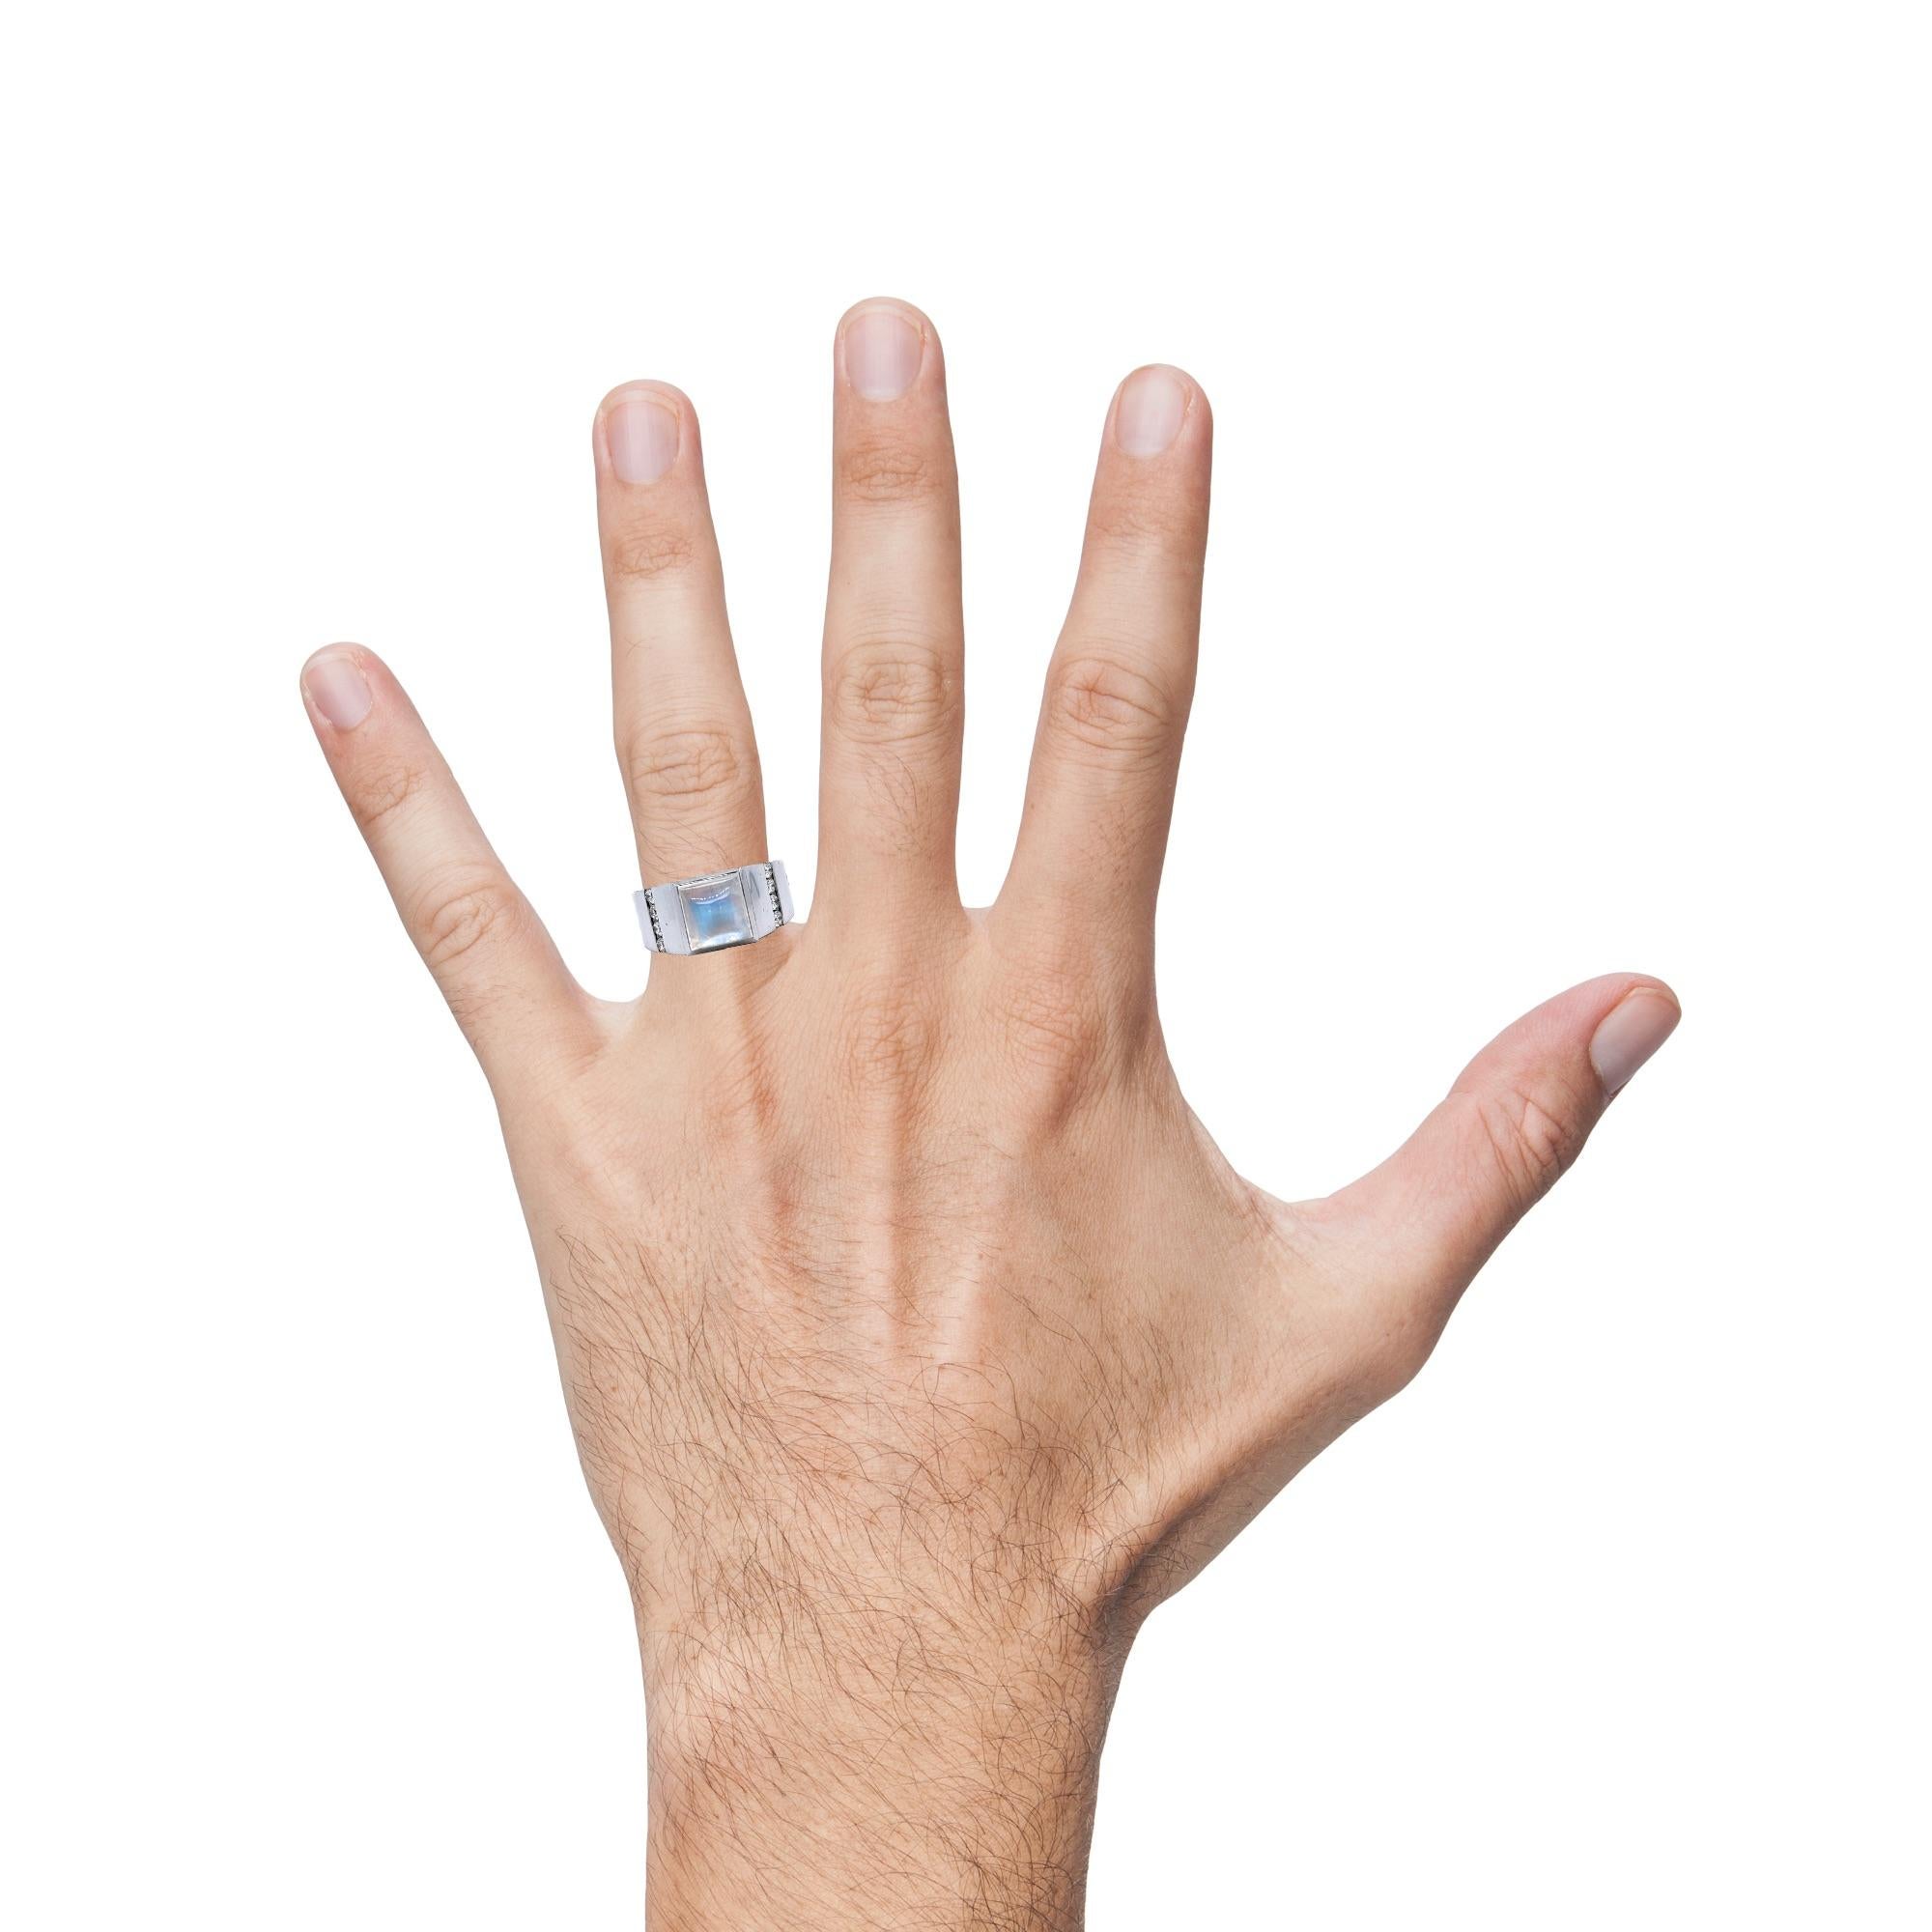 moonstone ring for men